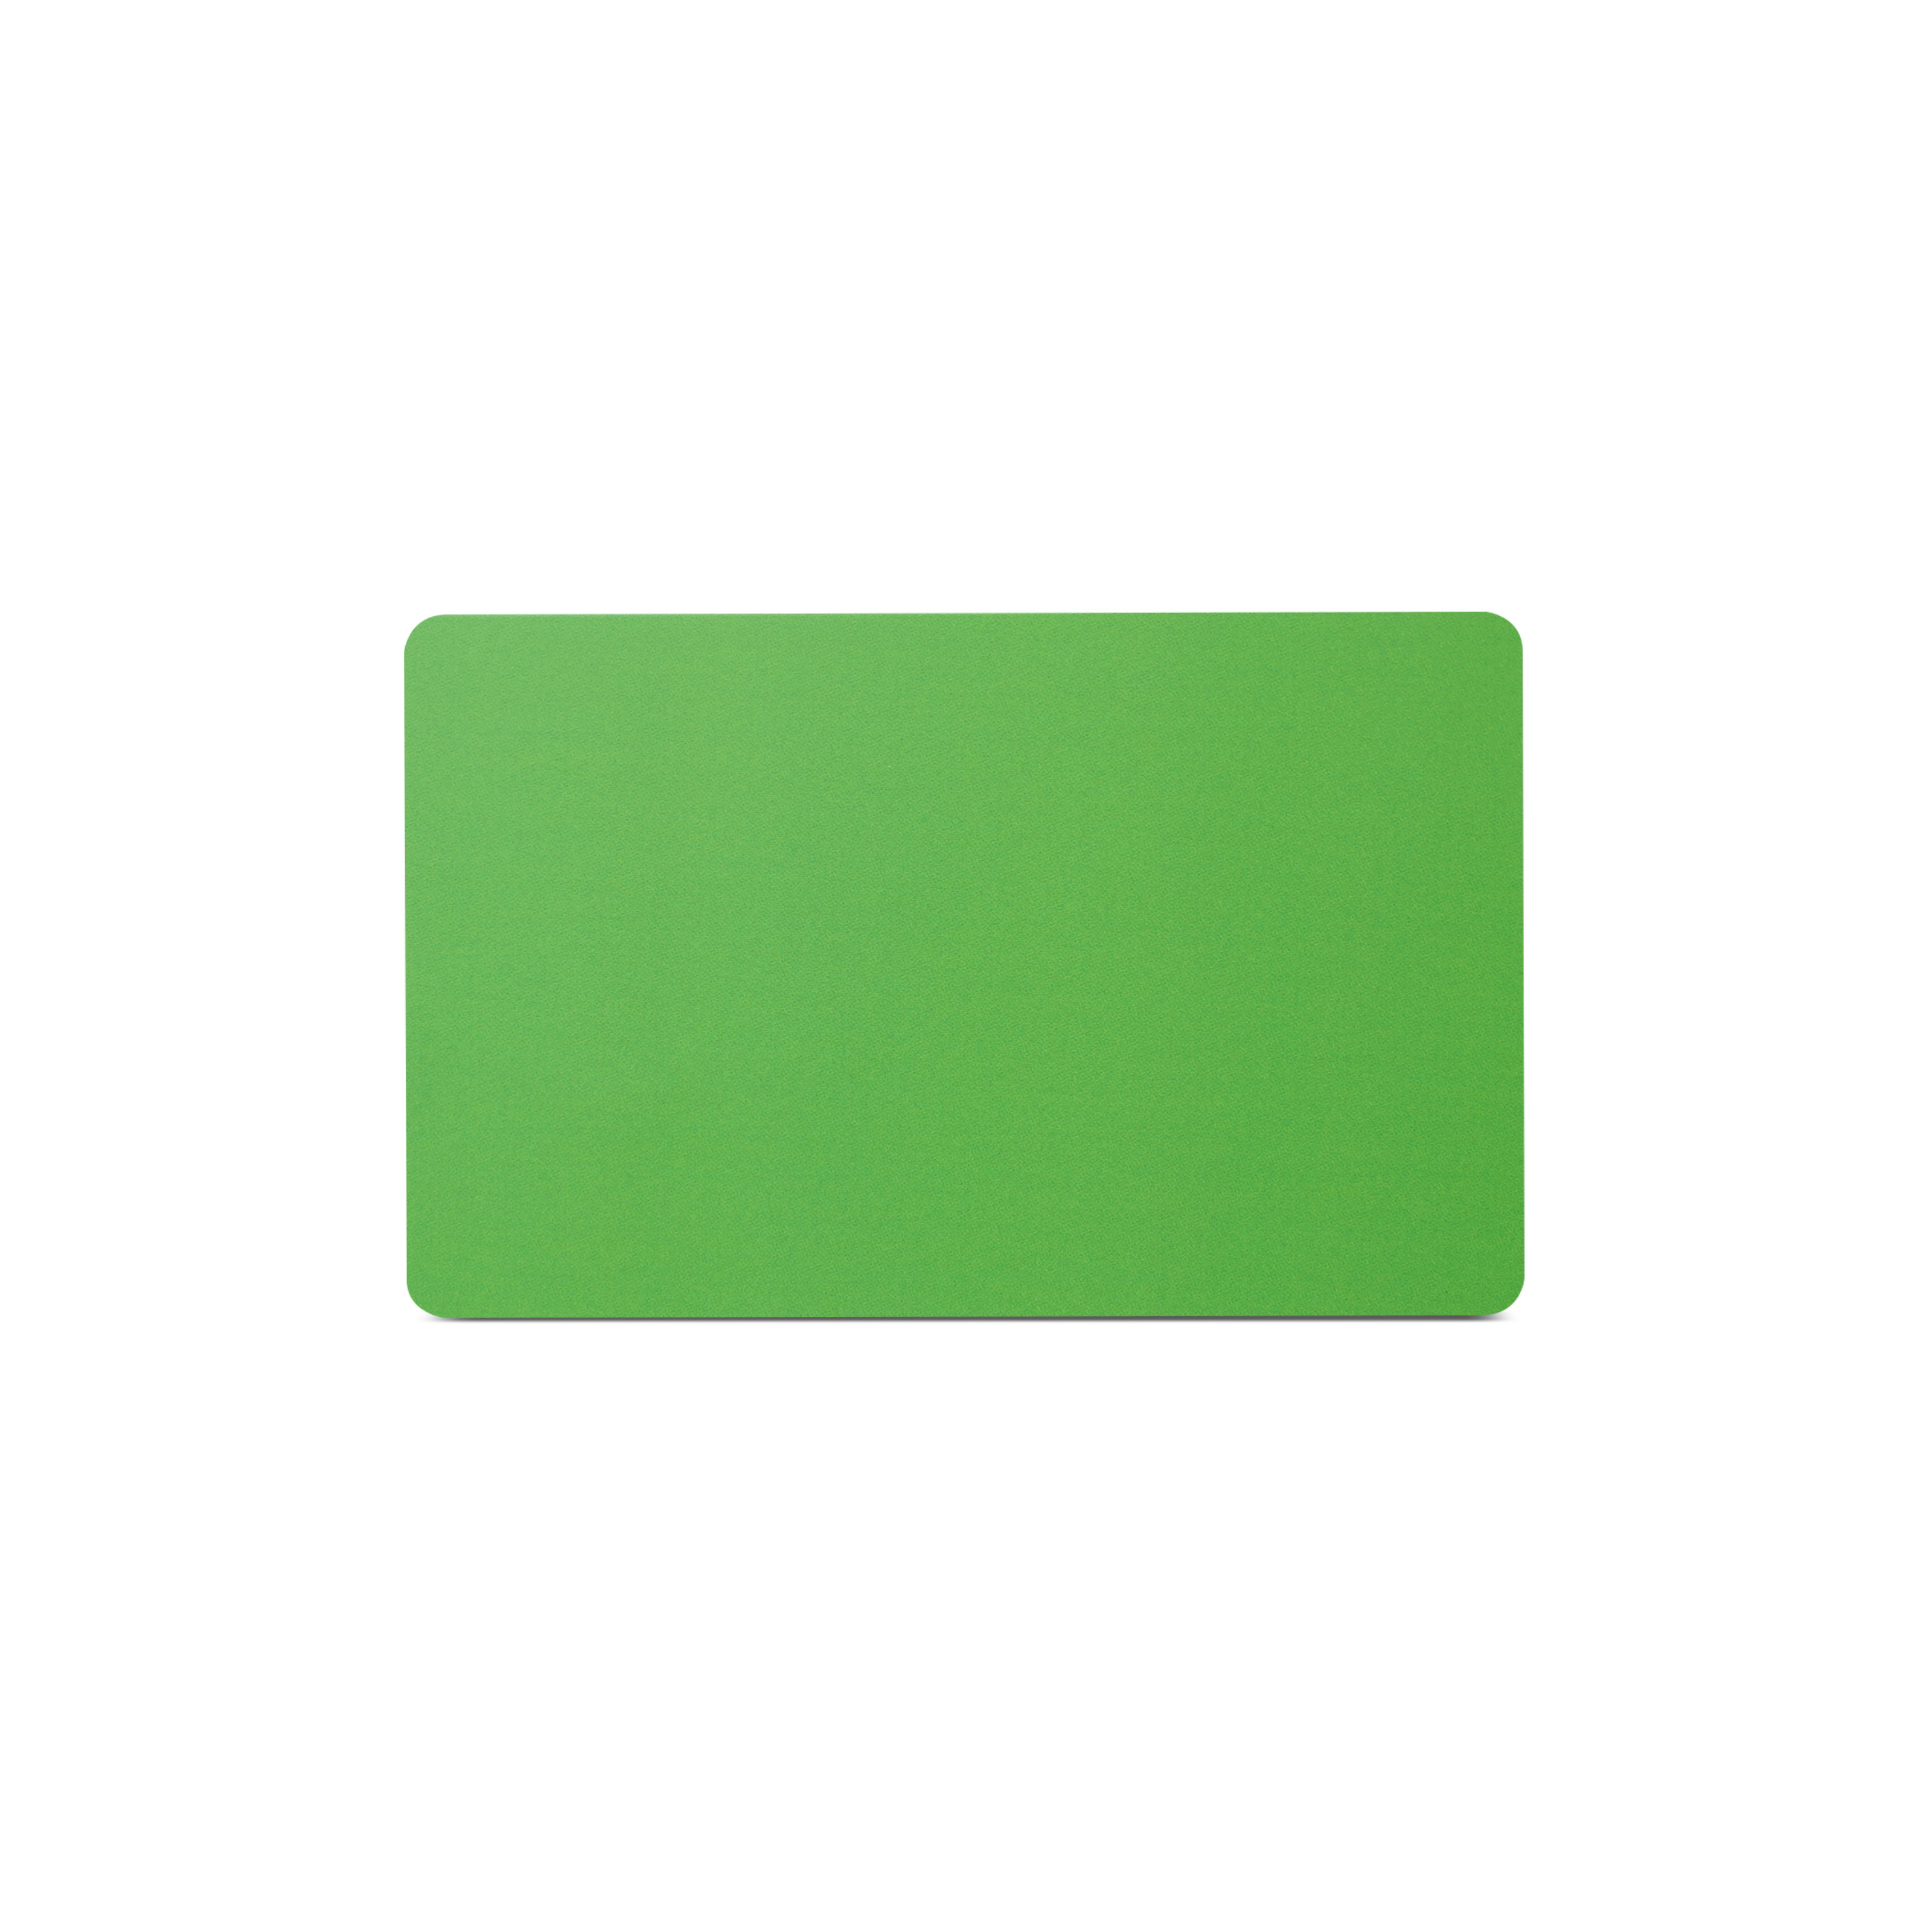 NFC Karte PVC - 85,6 x 54 mm - NTAG213 - 180 Byte - grün matt - bedruckt